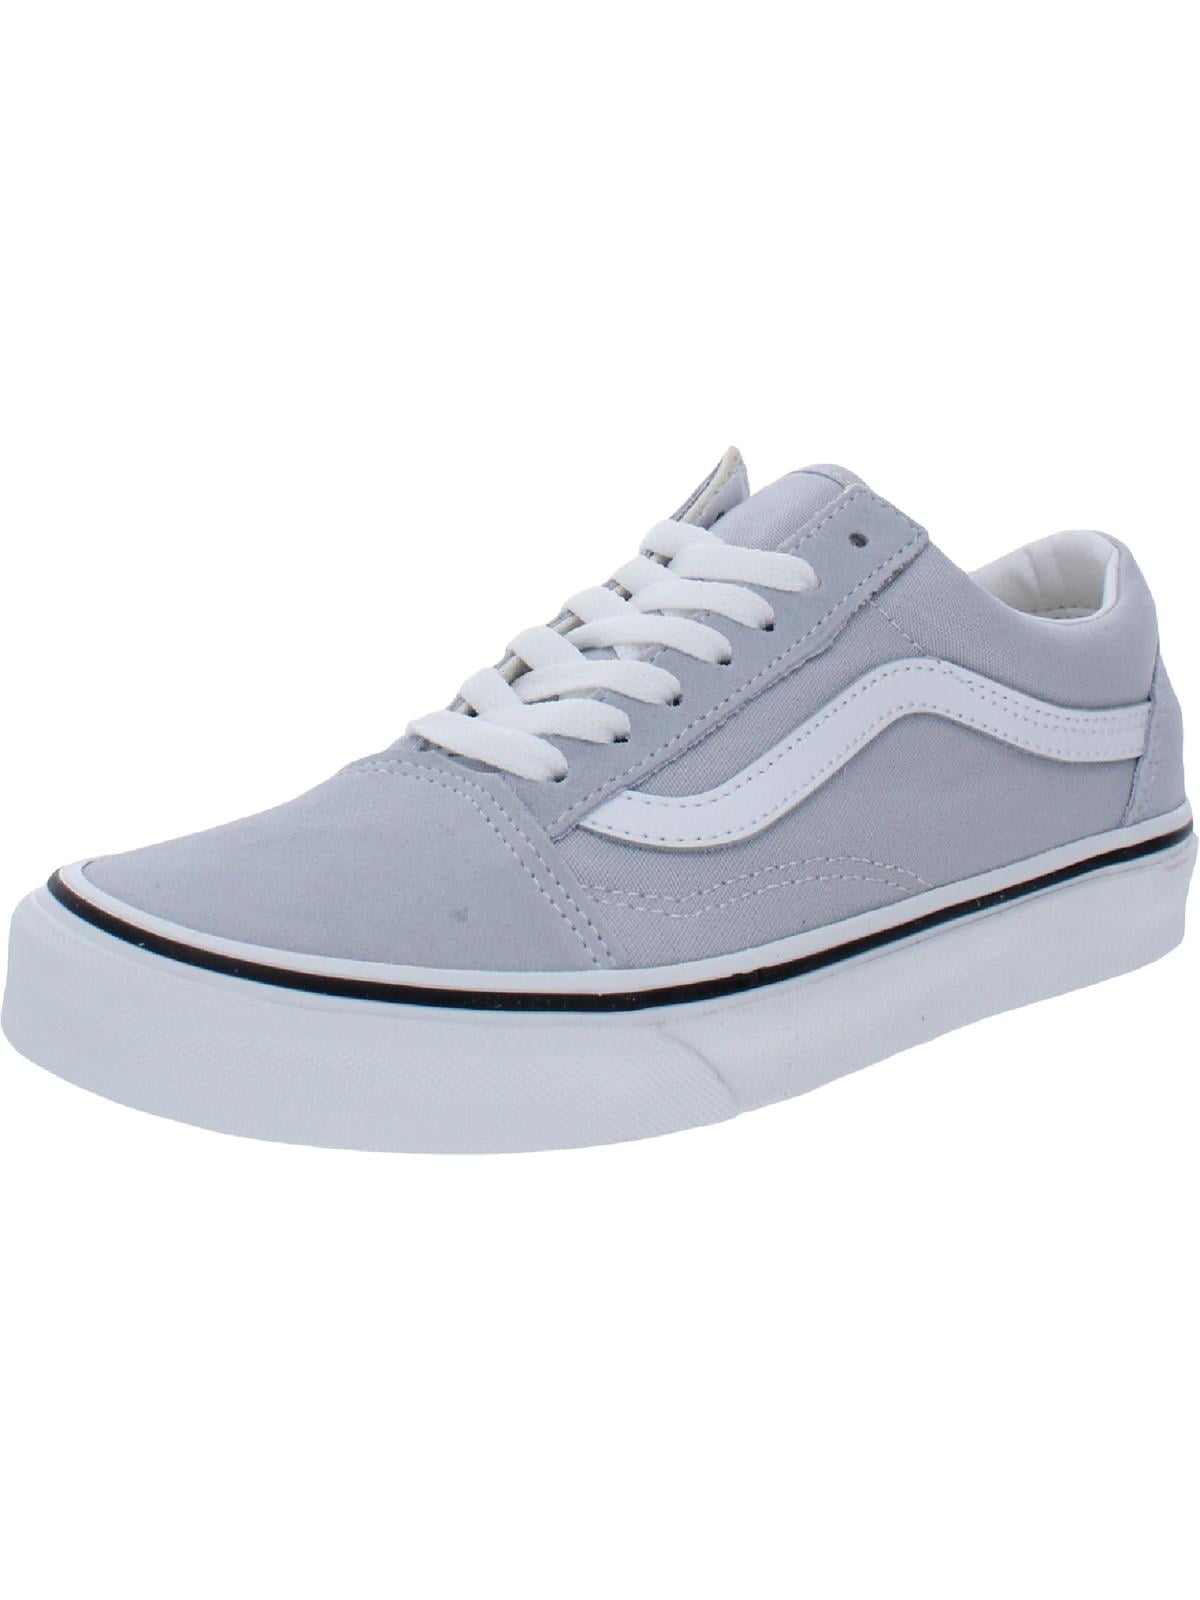 Vans Mens Old Skool Lifestyle Sneakers Skate Shoes Gray 5 Medium (D) Walmart.com